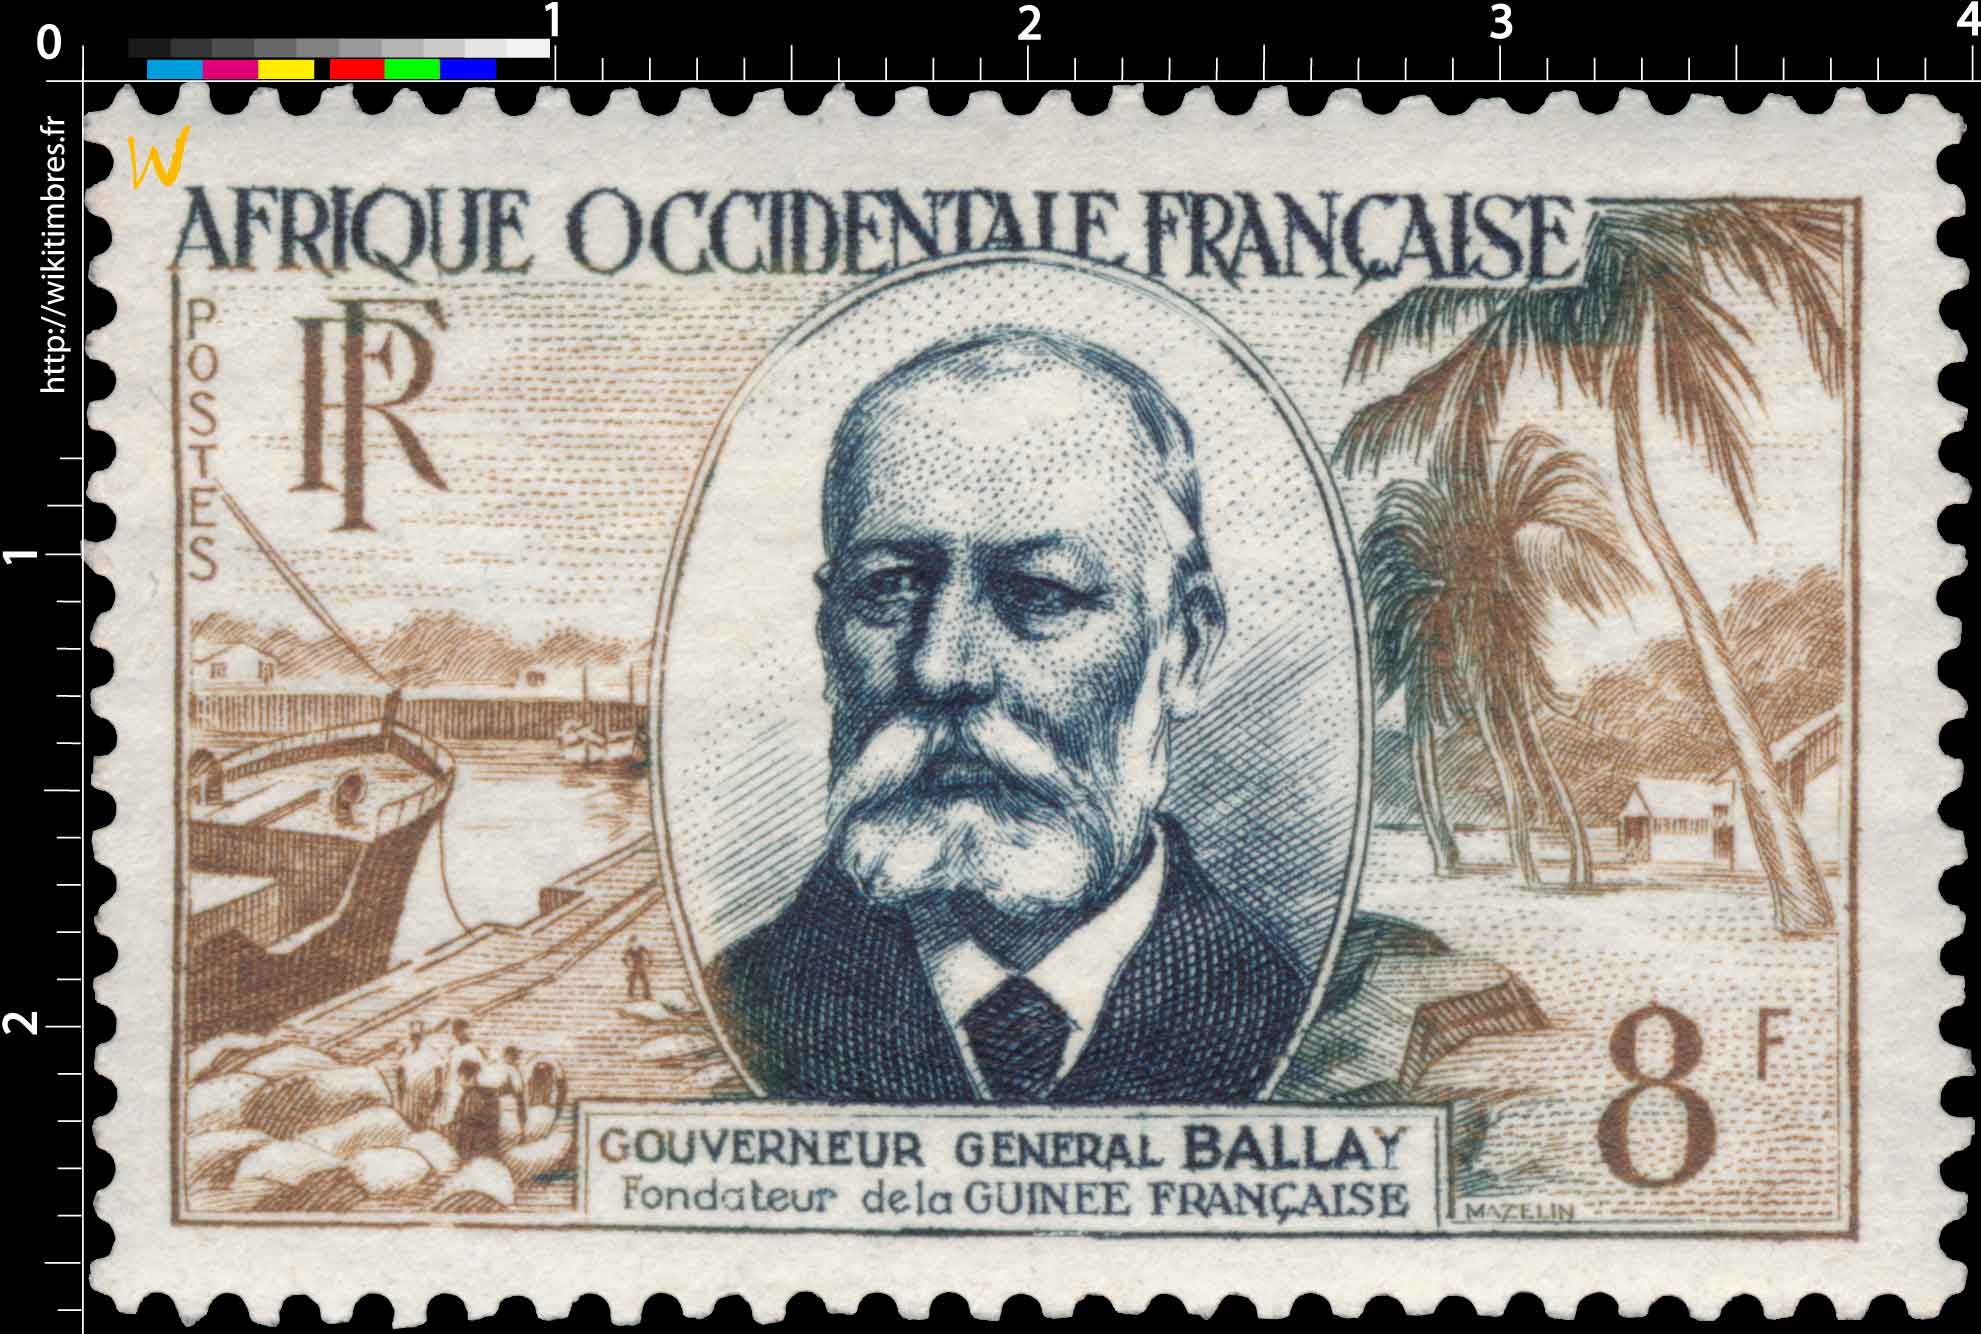 Afrique Occidentale Française - Gouverneur général Ballay Fondateur de la Guinée française